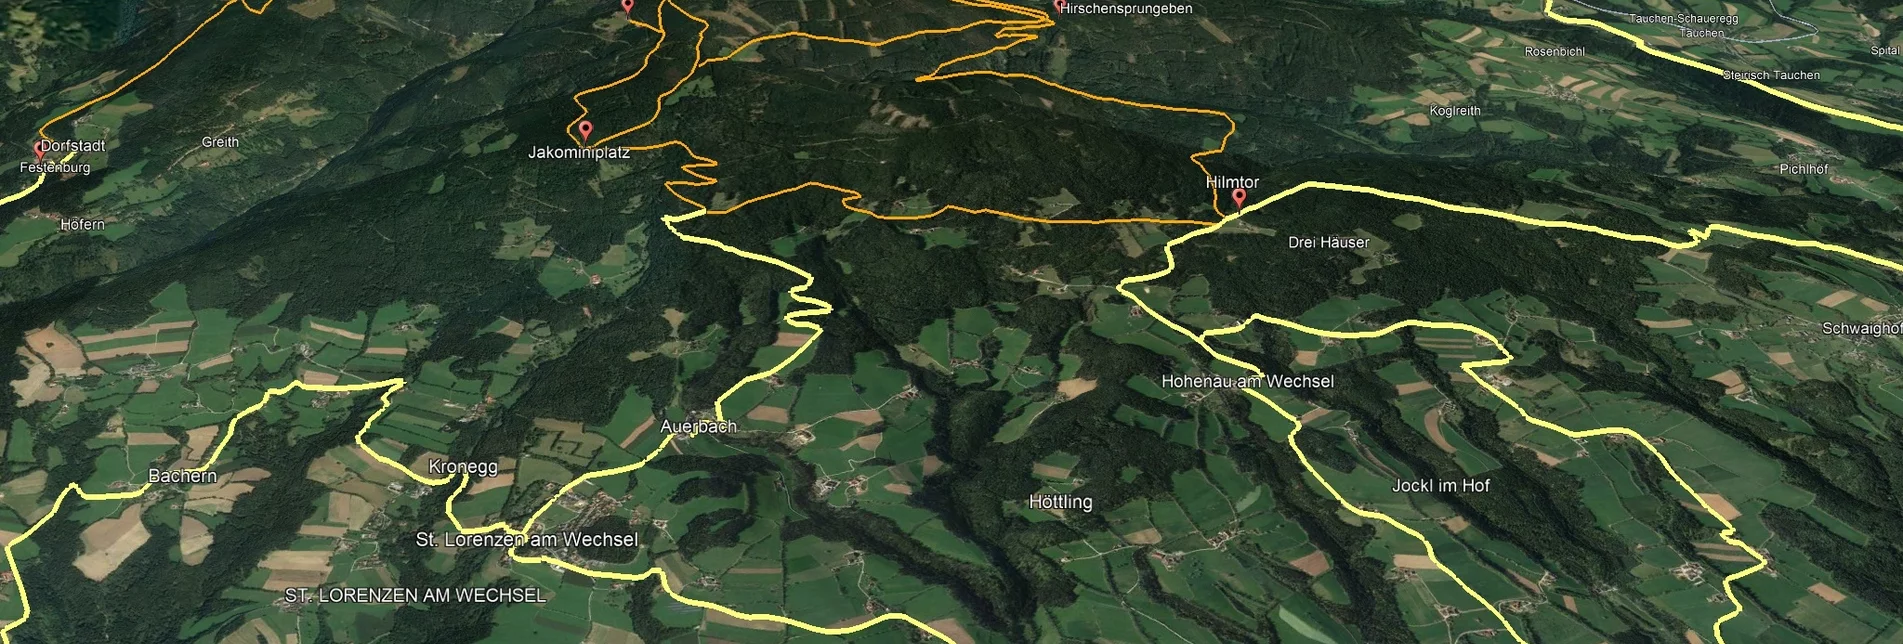 Mountainbike Steirische Wexl Trails - Zubringer Burgfeld nach Bruck an der Lafnitz (Anbindung) - Touren-Impression #1 | © Verein Tourismusentwicklung Steirischer Wechsel